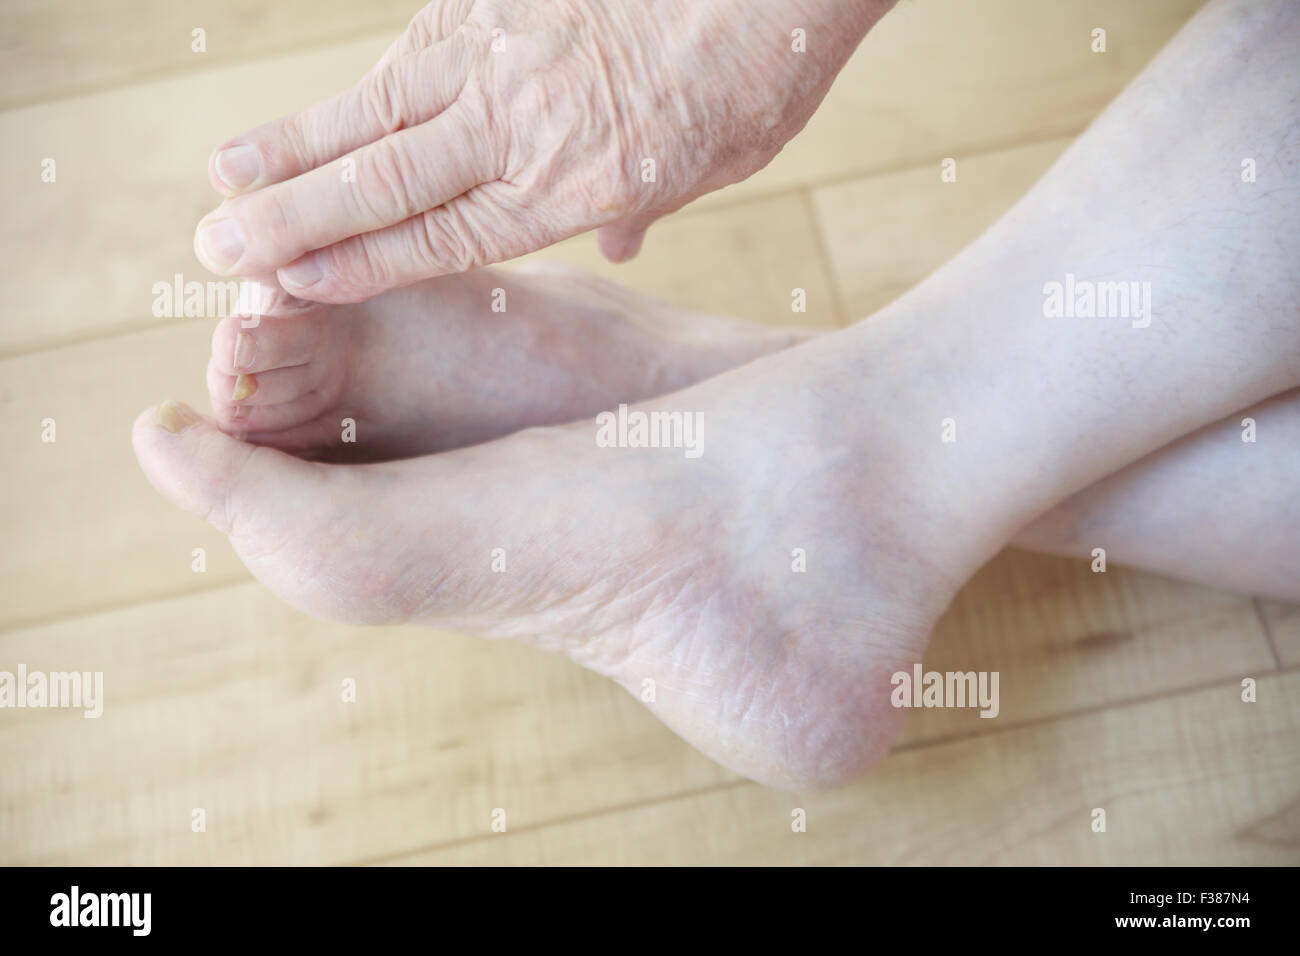 Ein älterer Mann erreicht seinen Zehen aus einer sitzenden Position zu berühren. Stockfoto